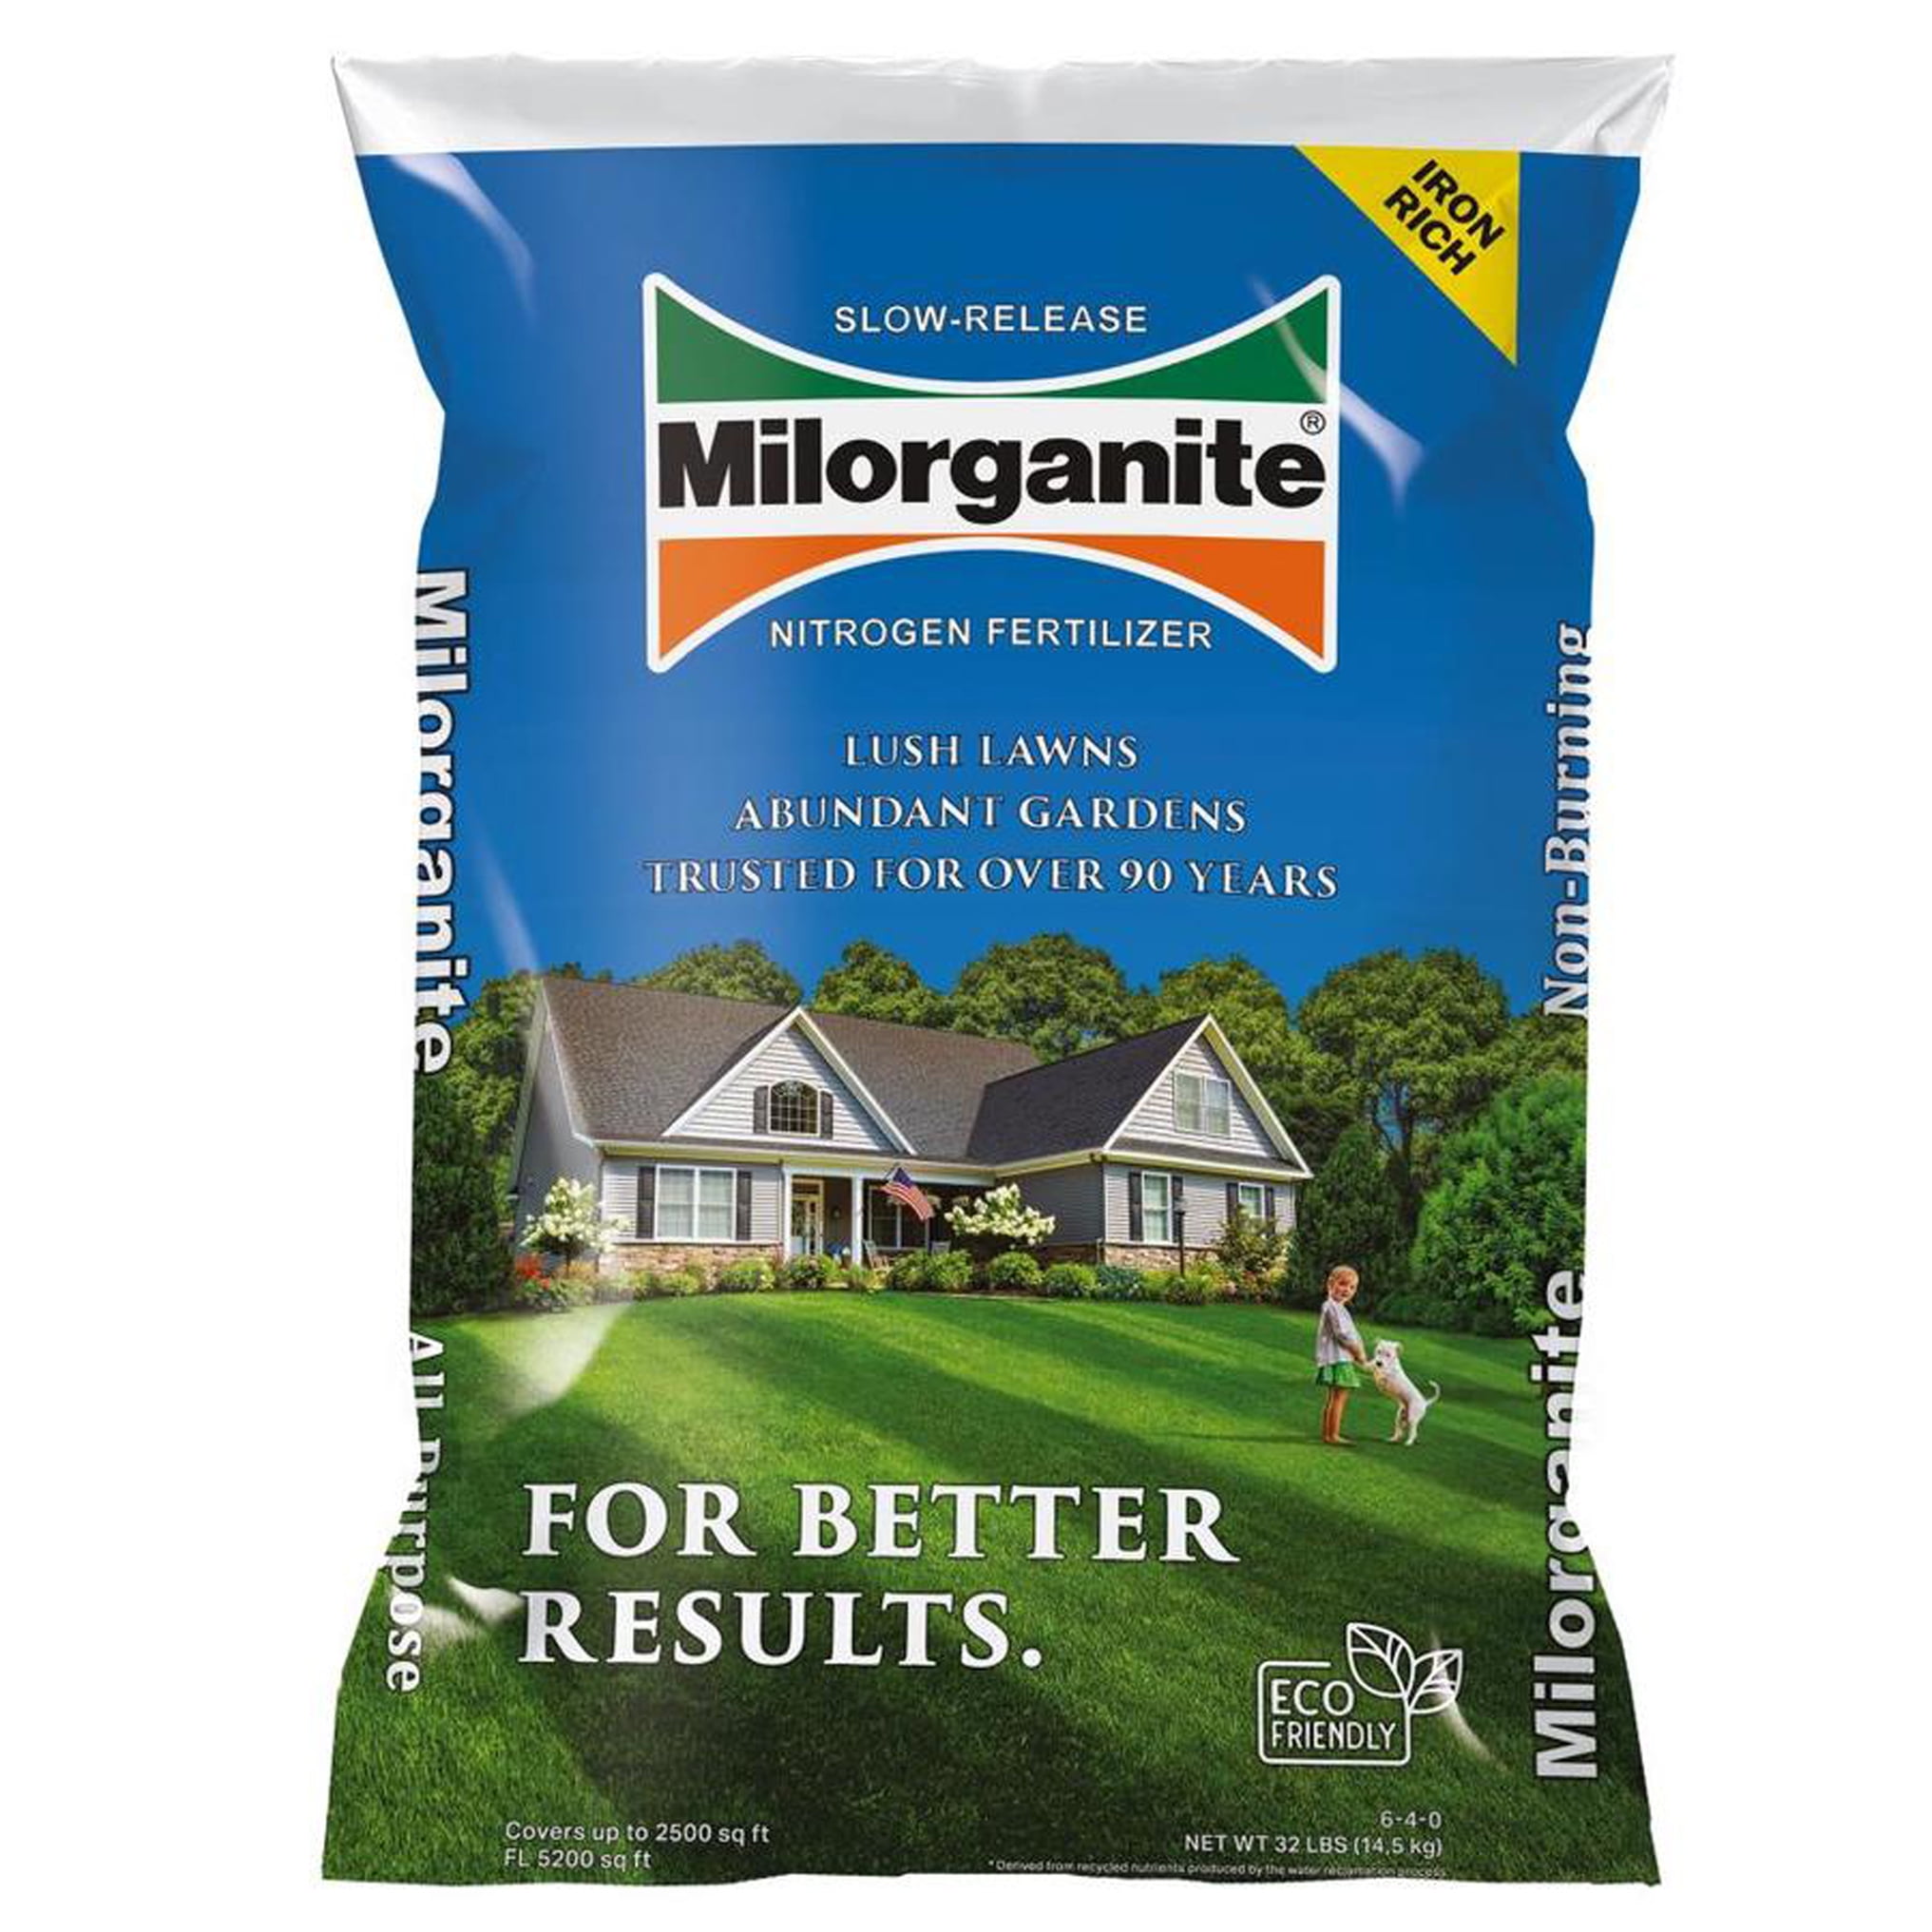 Image of Milorganite fertilizer image